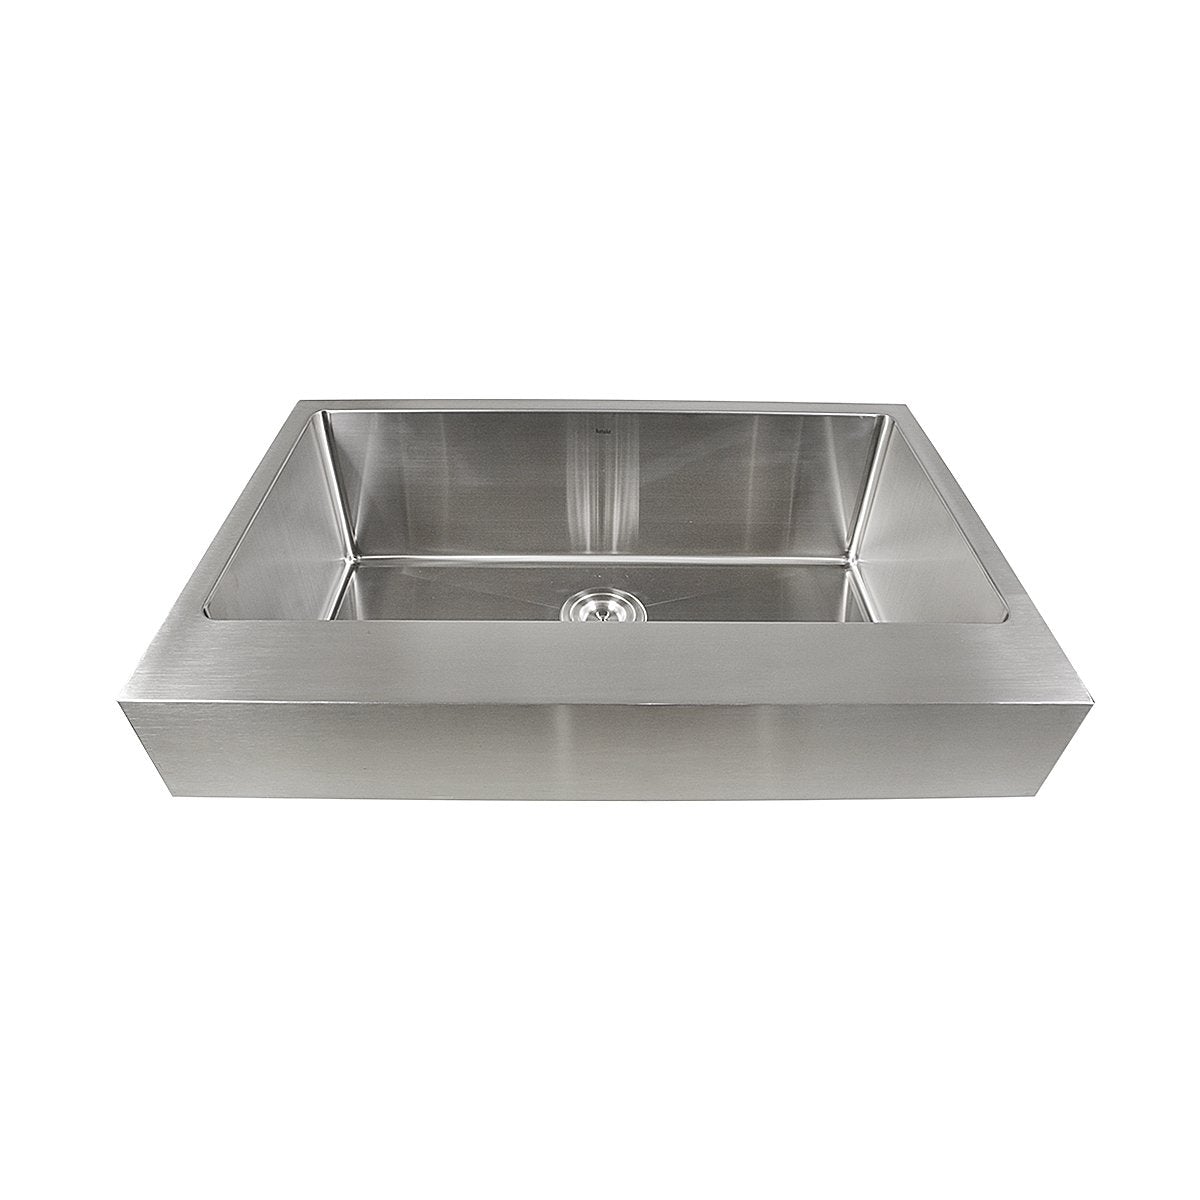 Nantucket EZApron33-5.5 Patented Design Pro Series Single Bowl Undermount Stainless Steel Kitchen Sink with 5.5" Apron Front - EZApron33-5.5